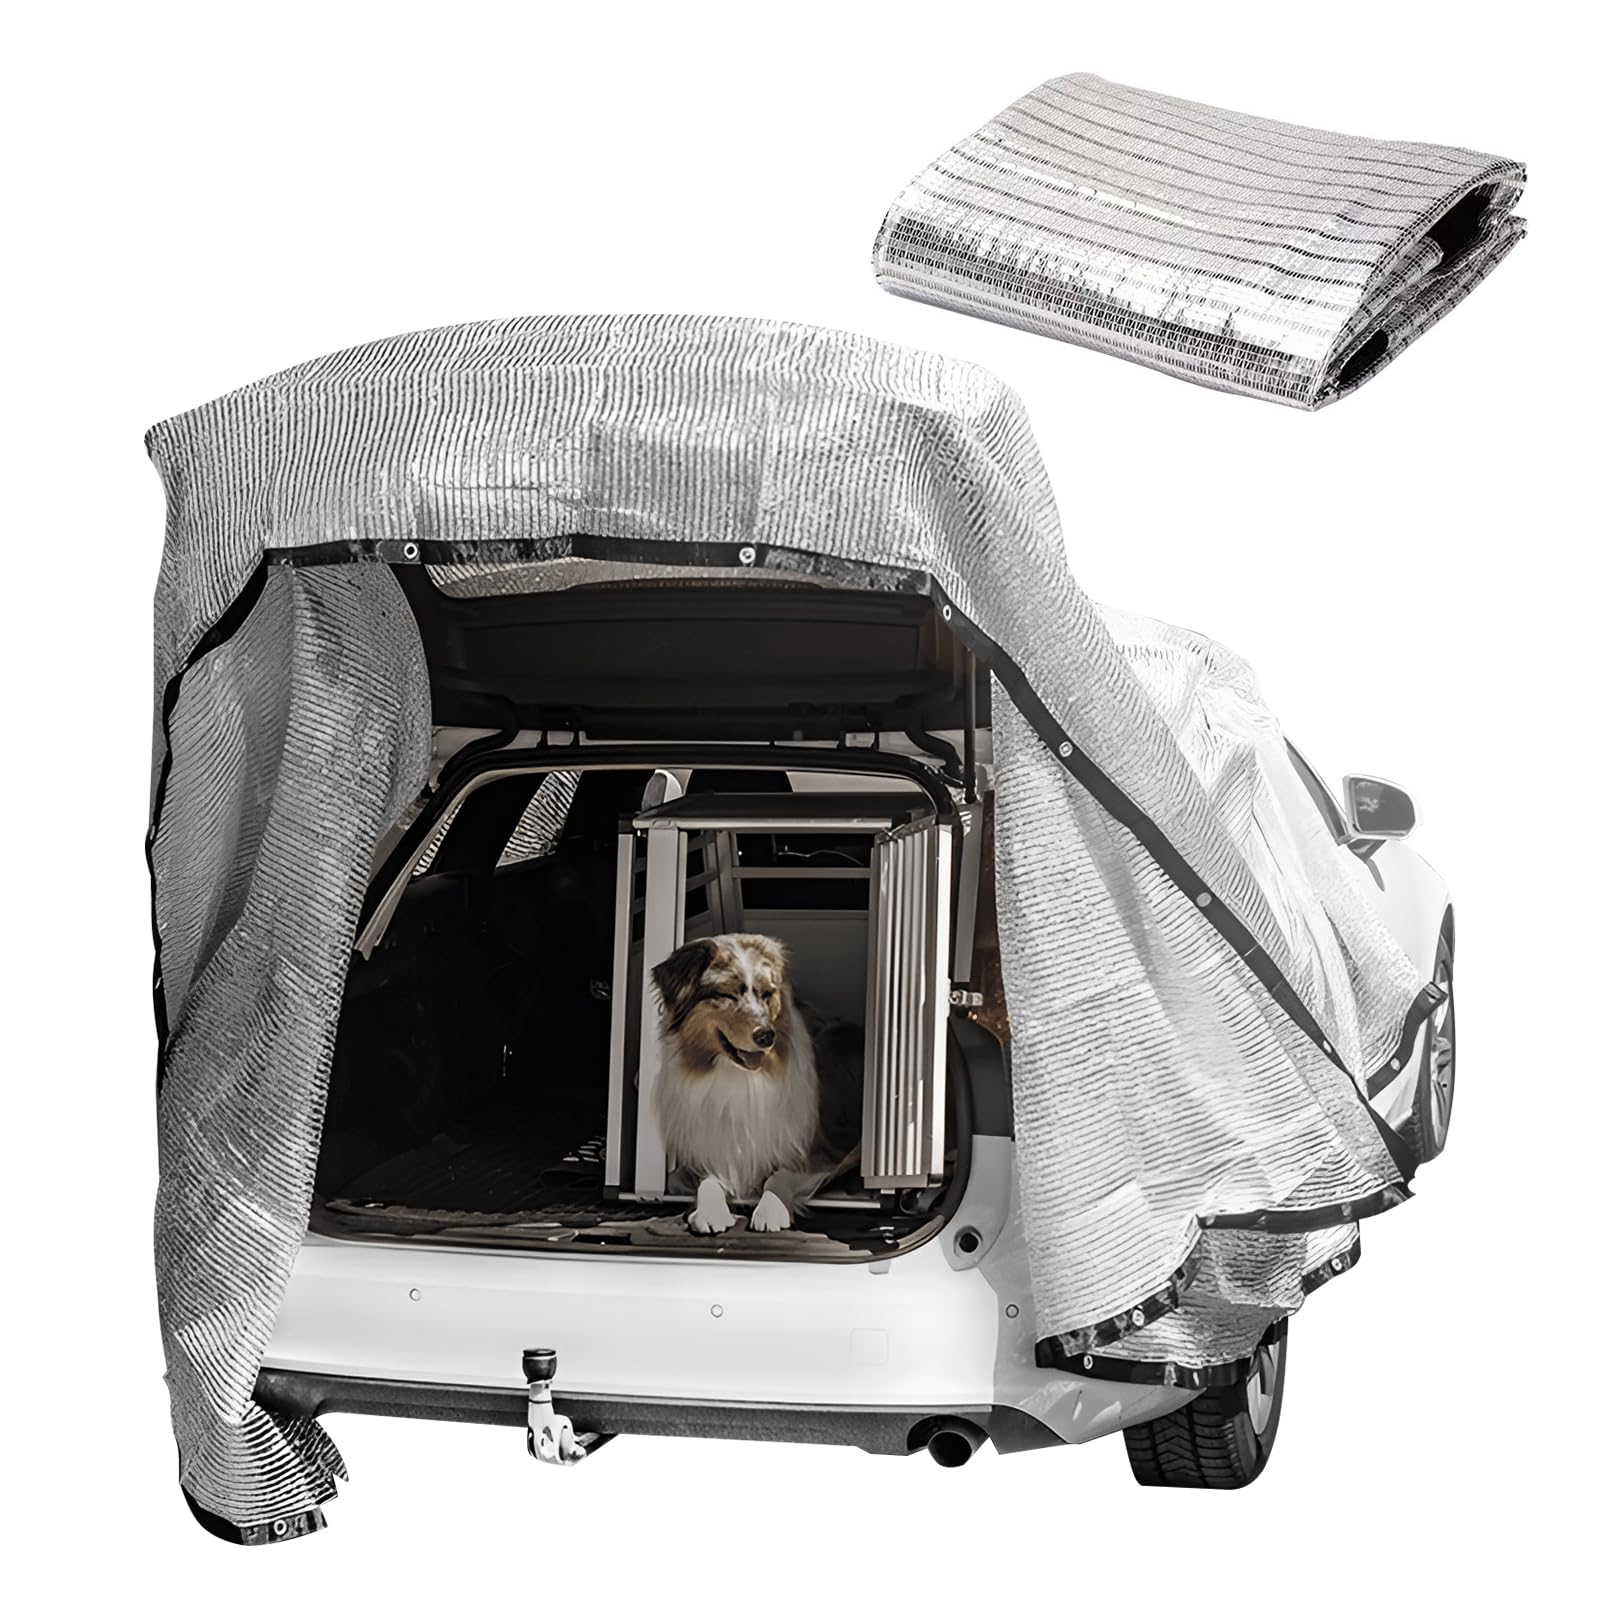 Schattennetz Auto für Hunde, 99% Schattennetz Alu Sonnensegel UV Sonnenschutz Hitzeschutz, Schattennetz Hund für Auto Camping Zubehör Terrassenüberdachung (3 * 4m-12m²) von LMYSUFI